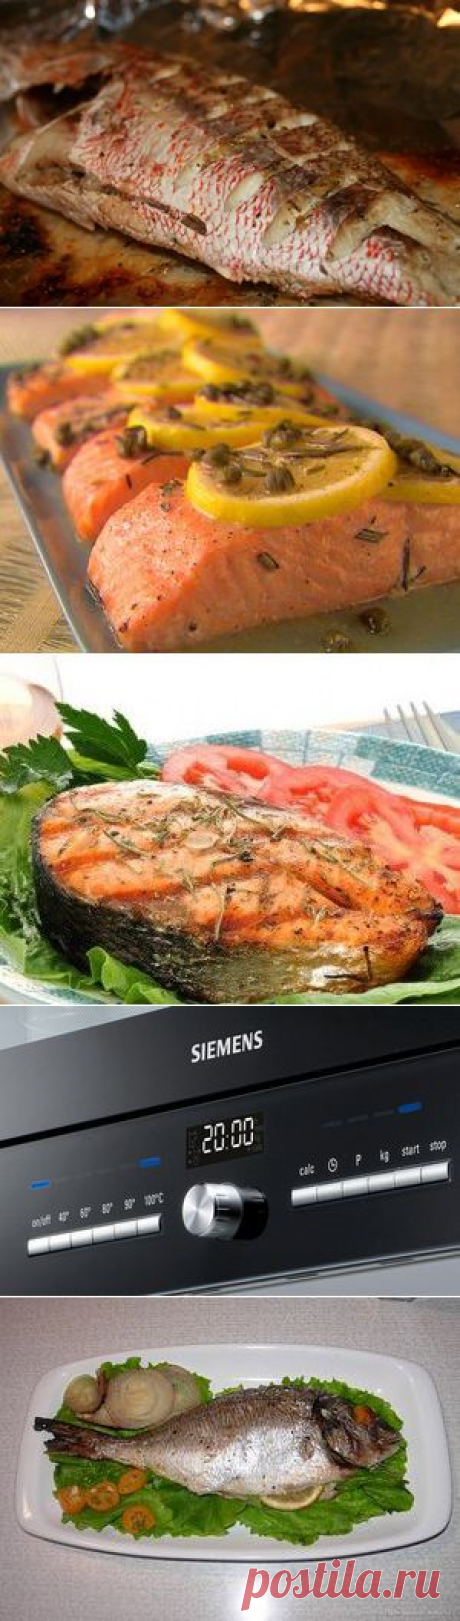 Рецепт приготовления рыбы в духовке: время приготовления красной рыбы